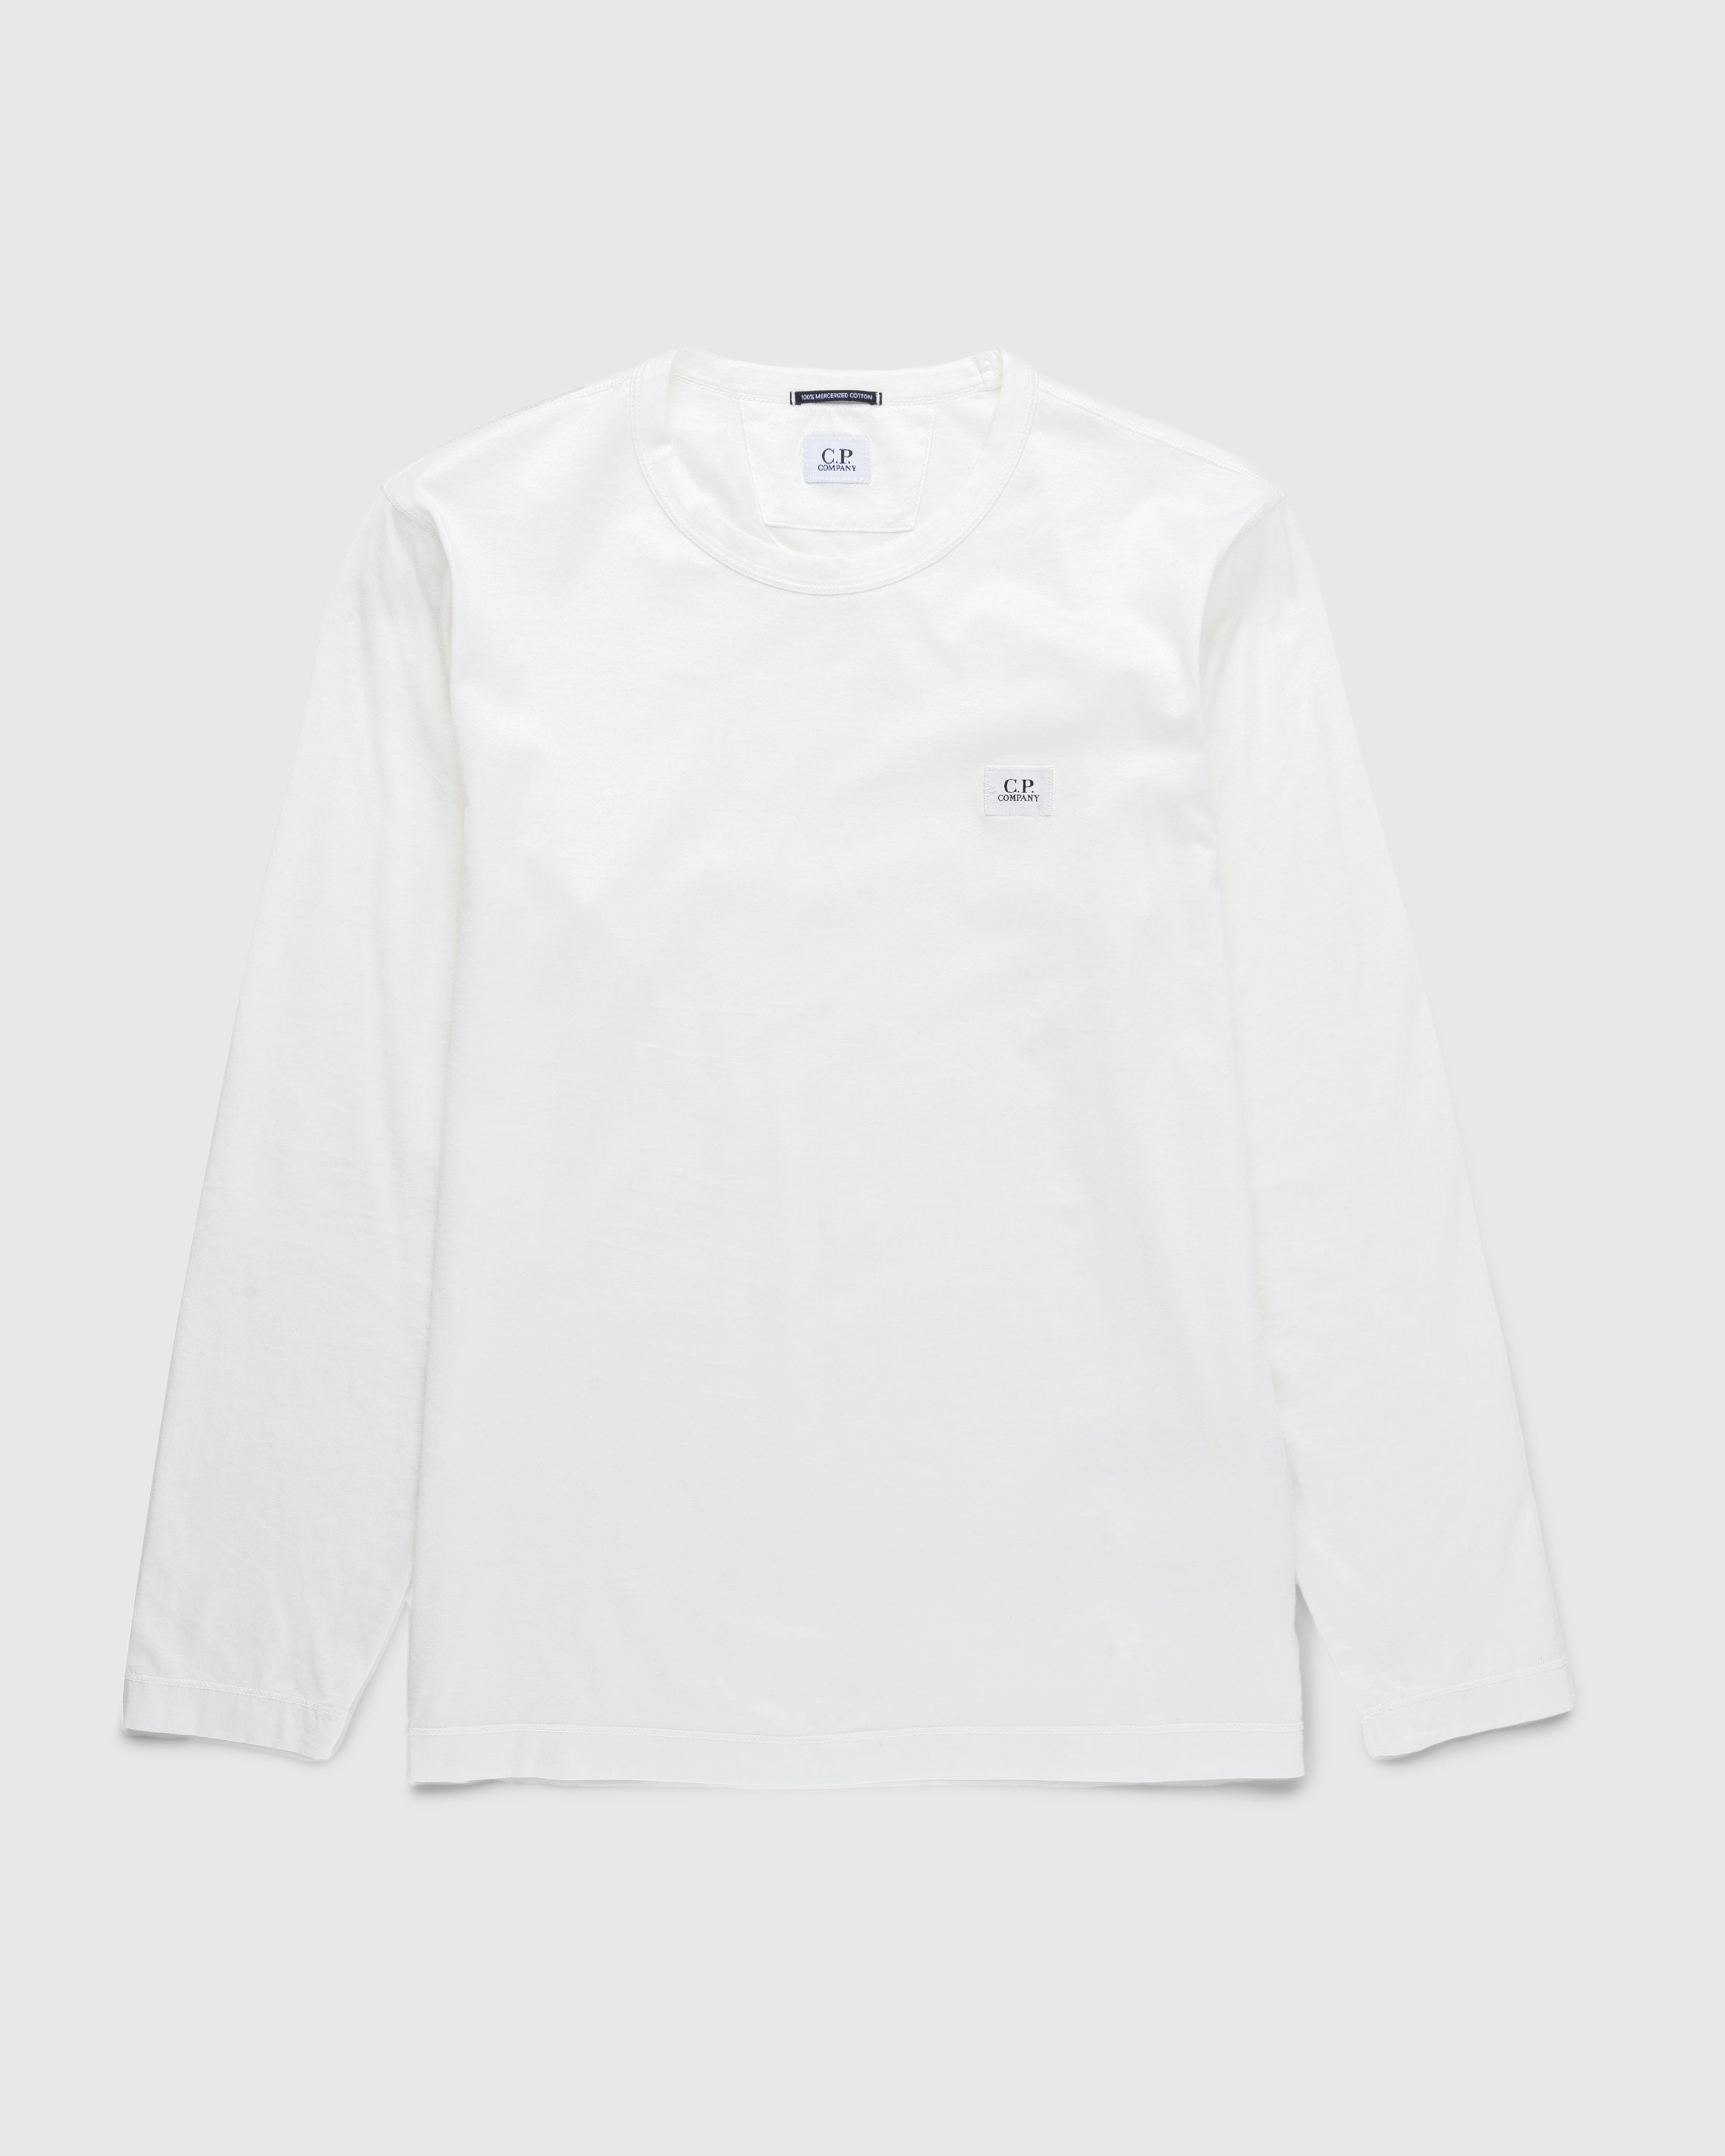 C.P. Company - T-Shirts - Long Sleeve - Clothing - White - Image 1